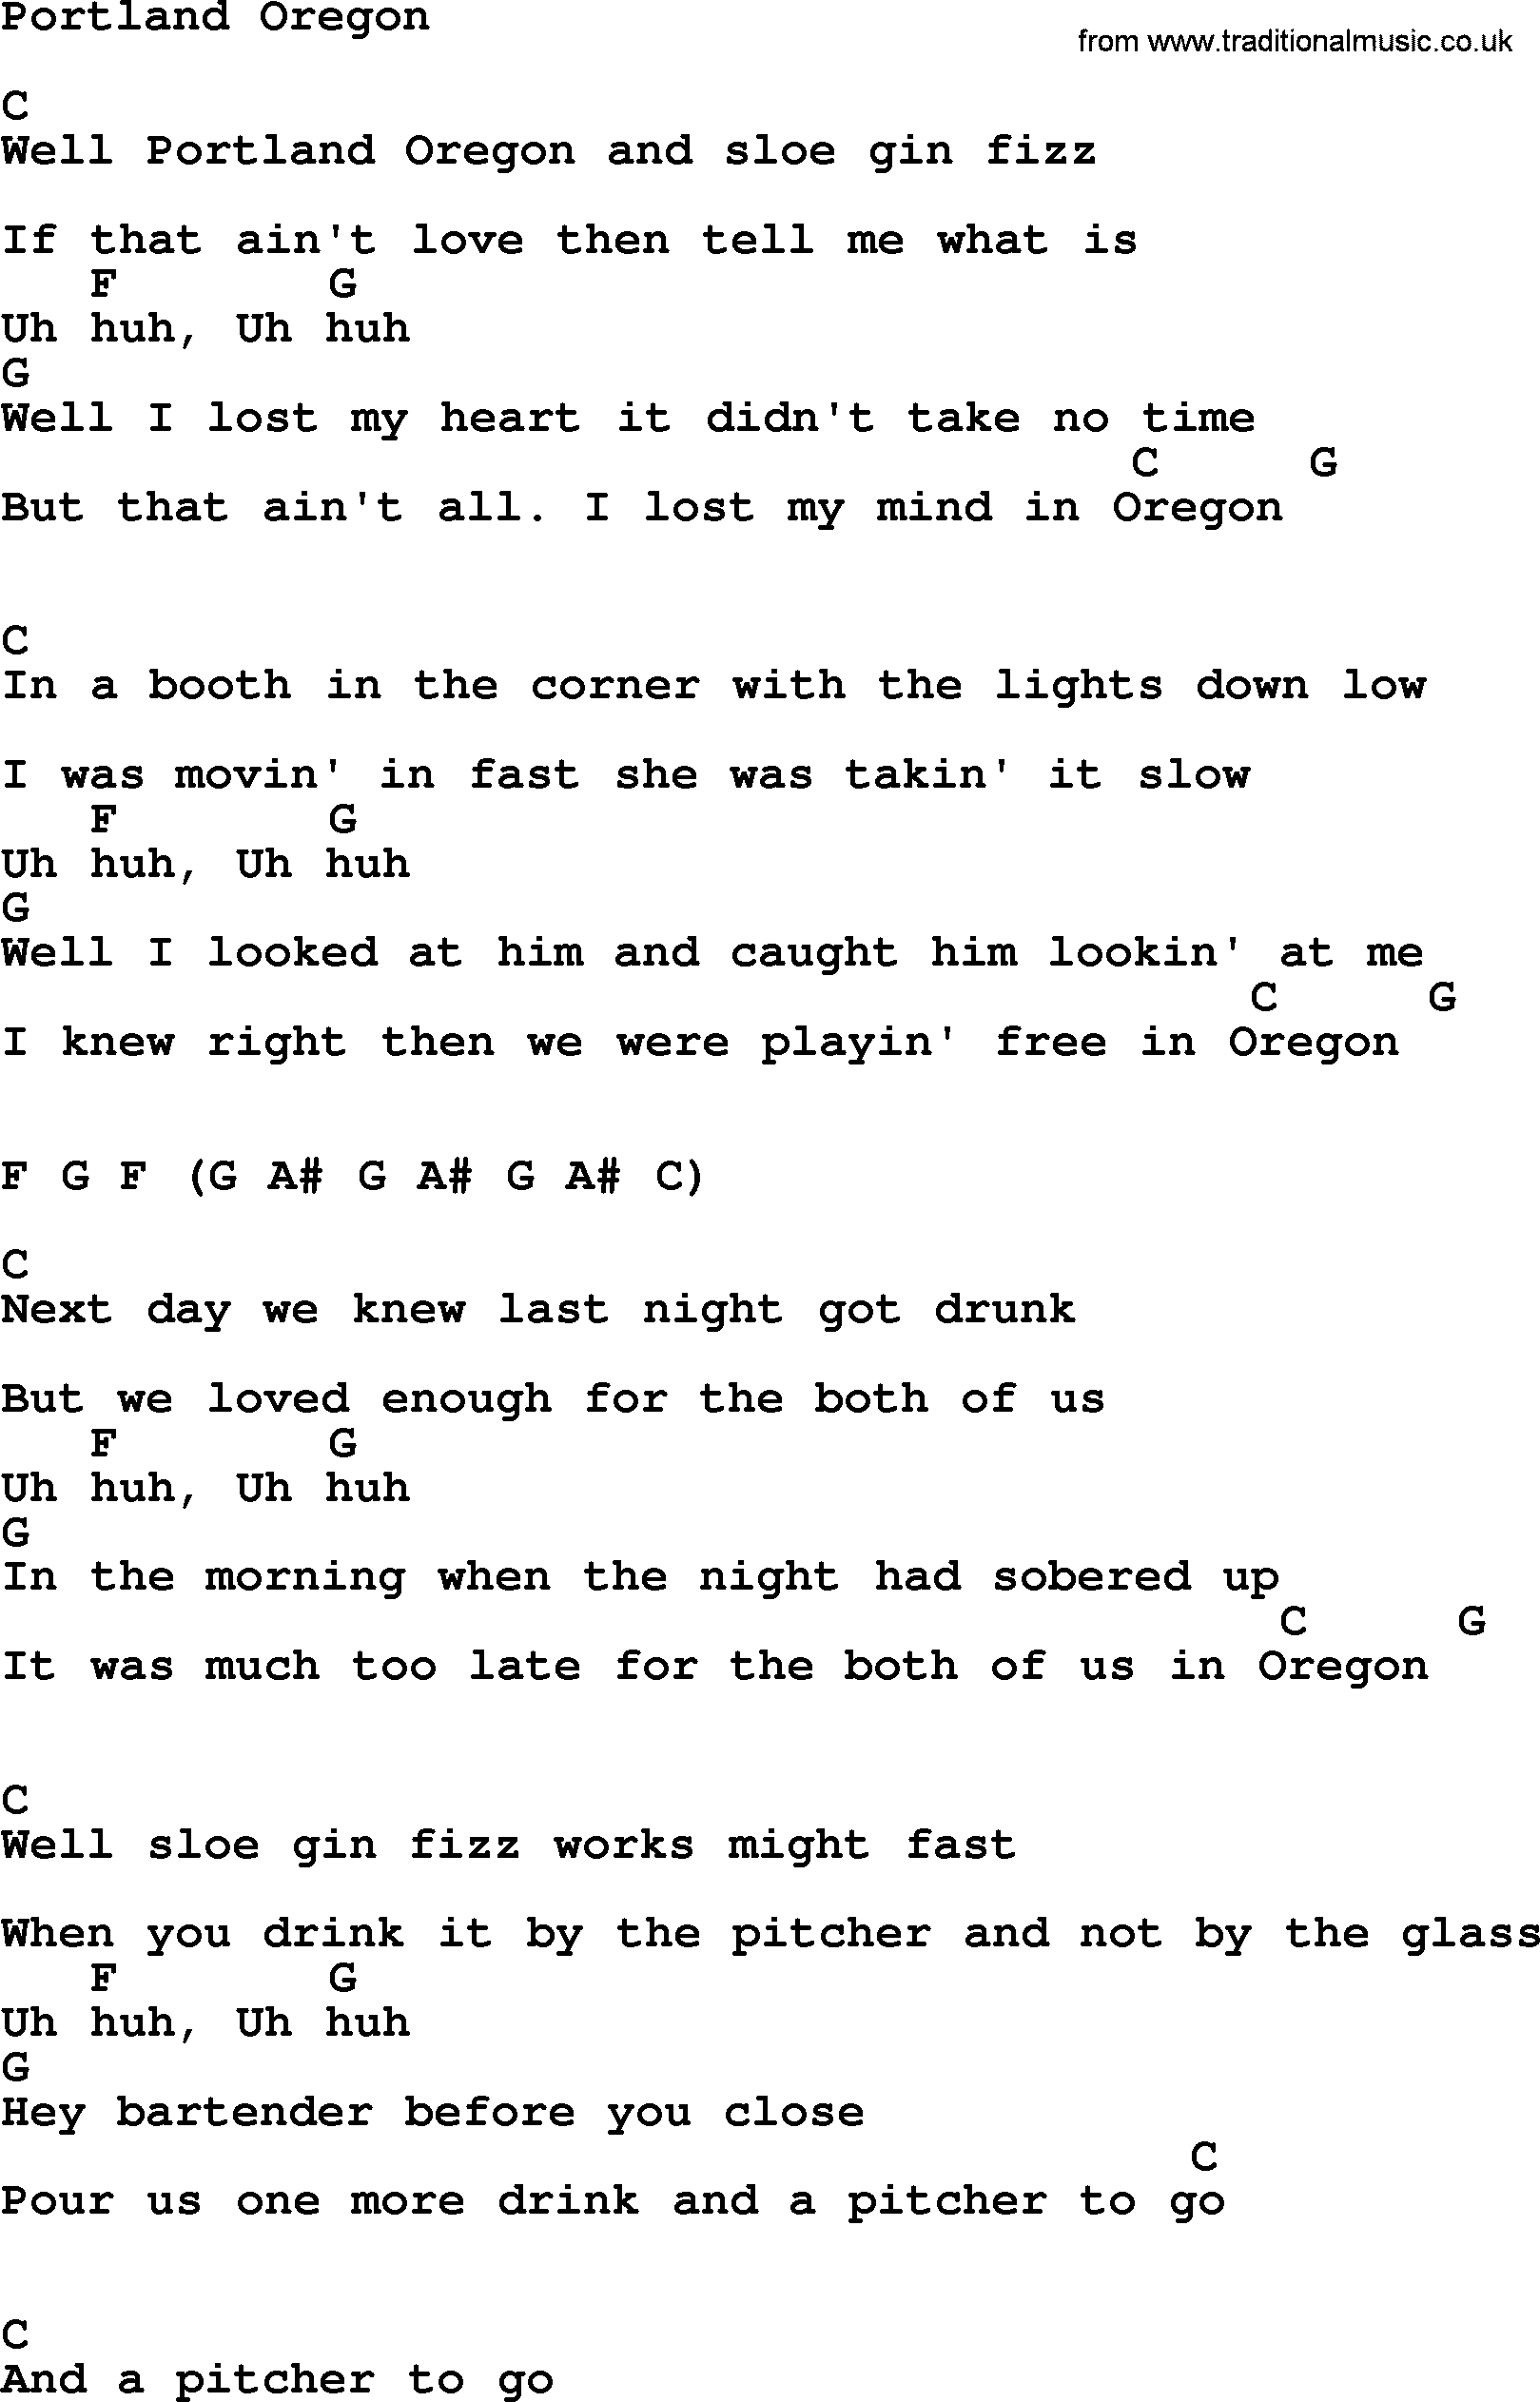 Loretta Lynn song: Portland Oregon lyrics and chords